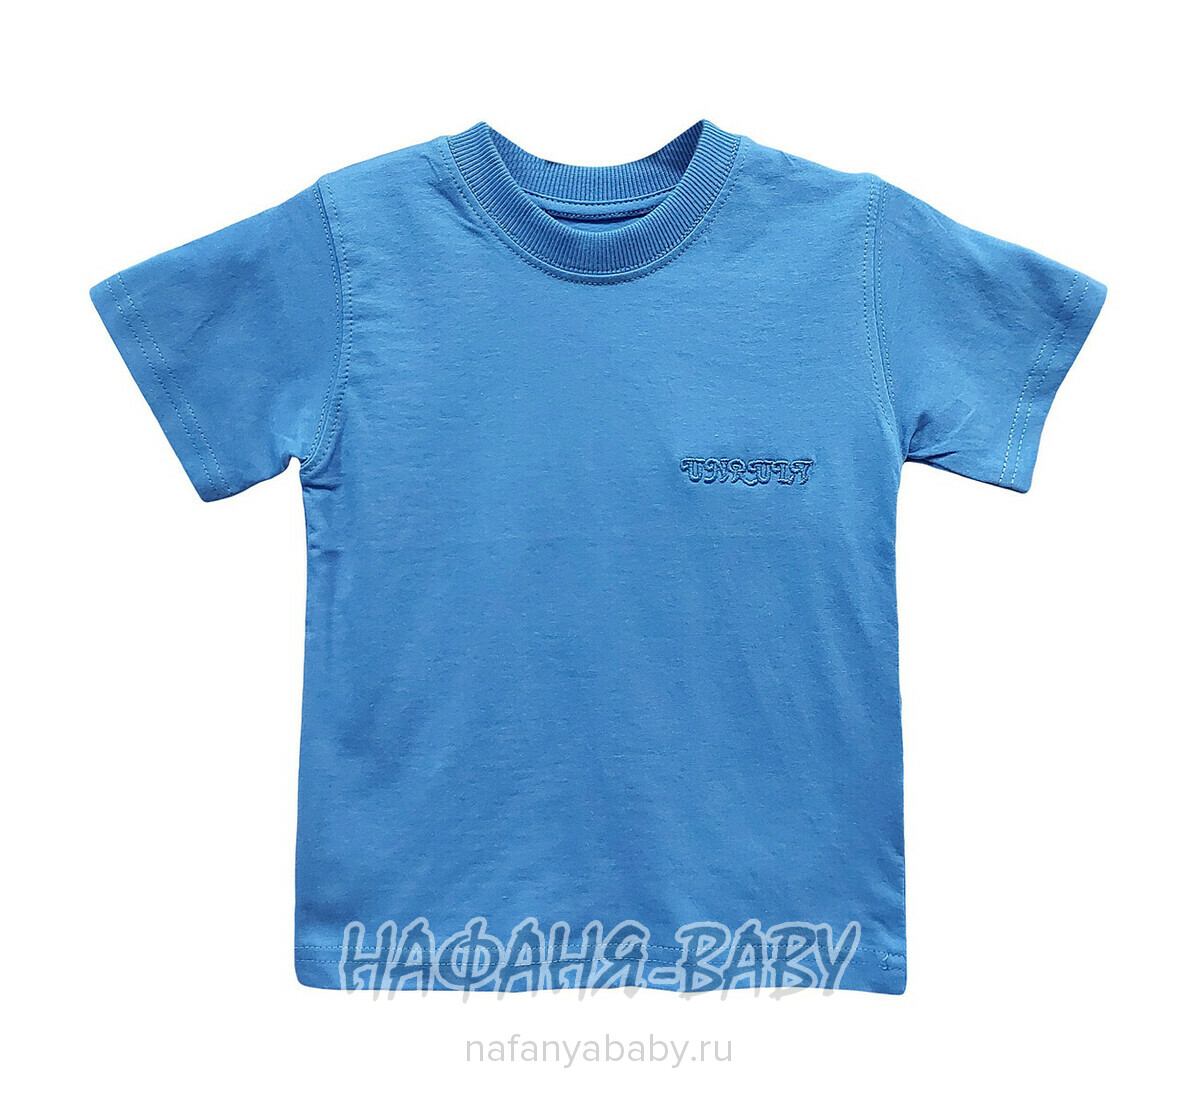 Детская футболка UNRULY, купить в интернет магазине Нафаня. арт: 2316 серо-голубой